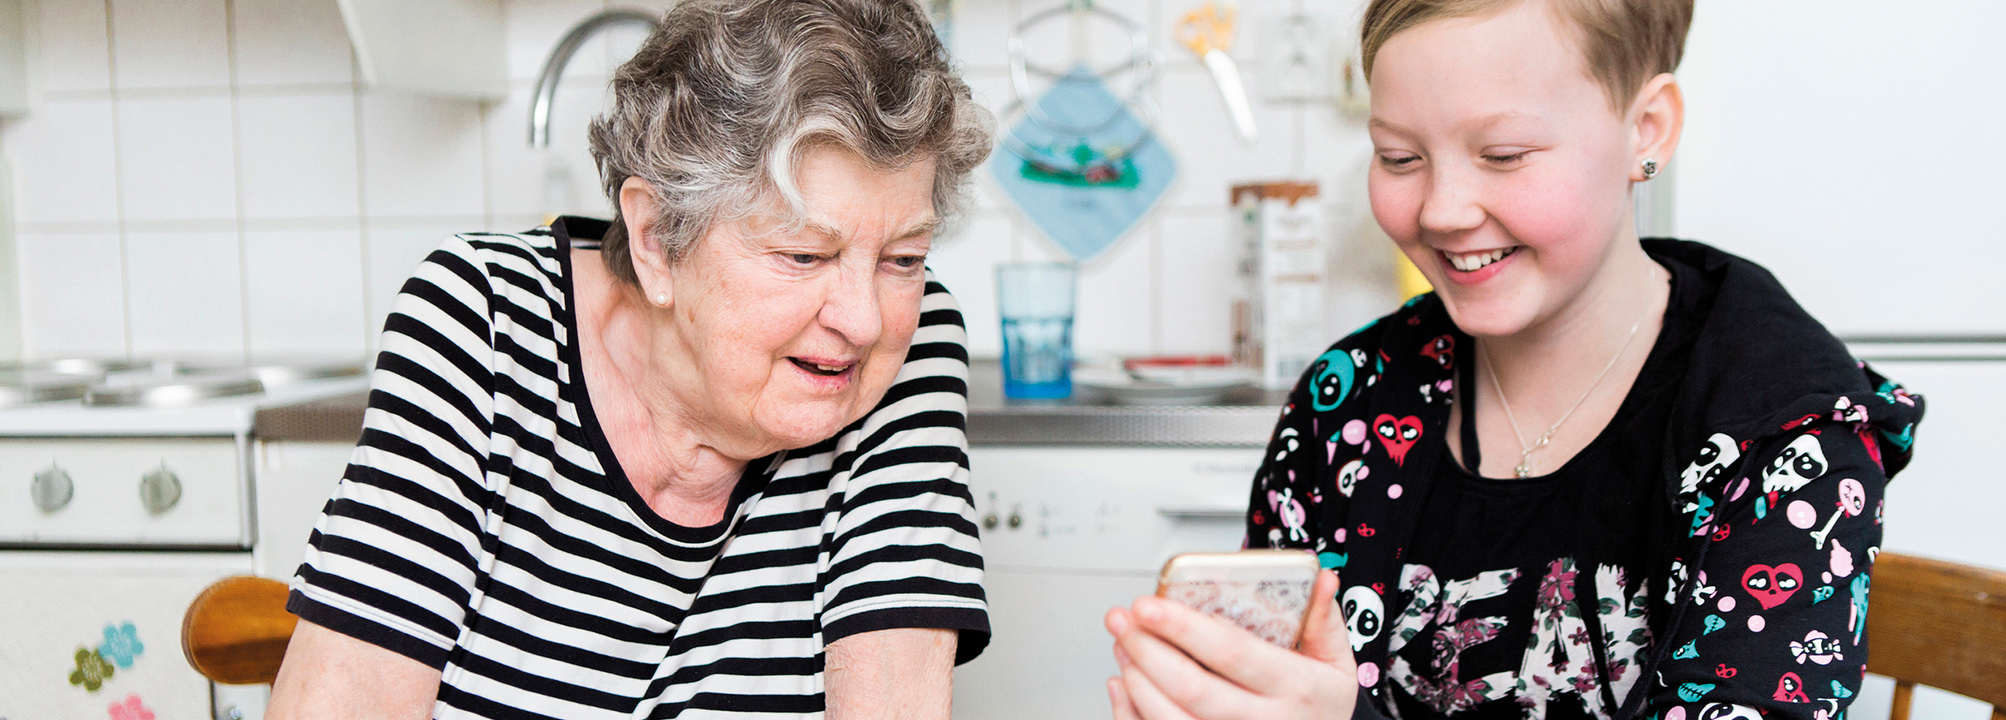 I köket sitter en äldre kvinna med en flicka som visar henne en mobil.